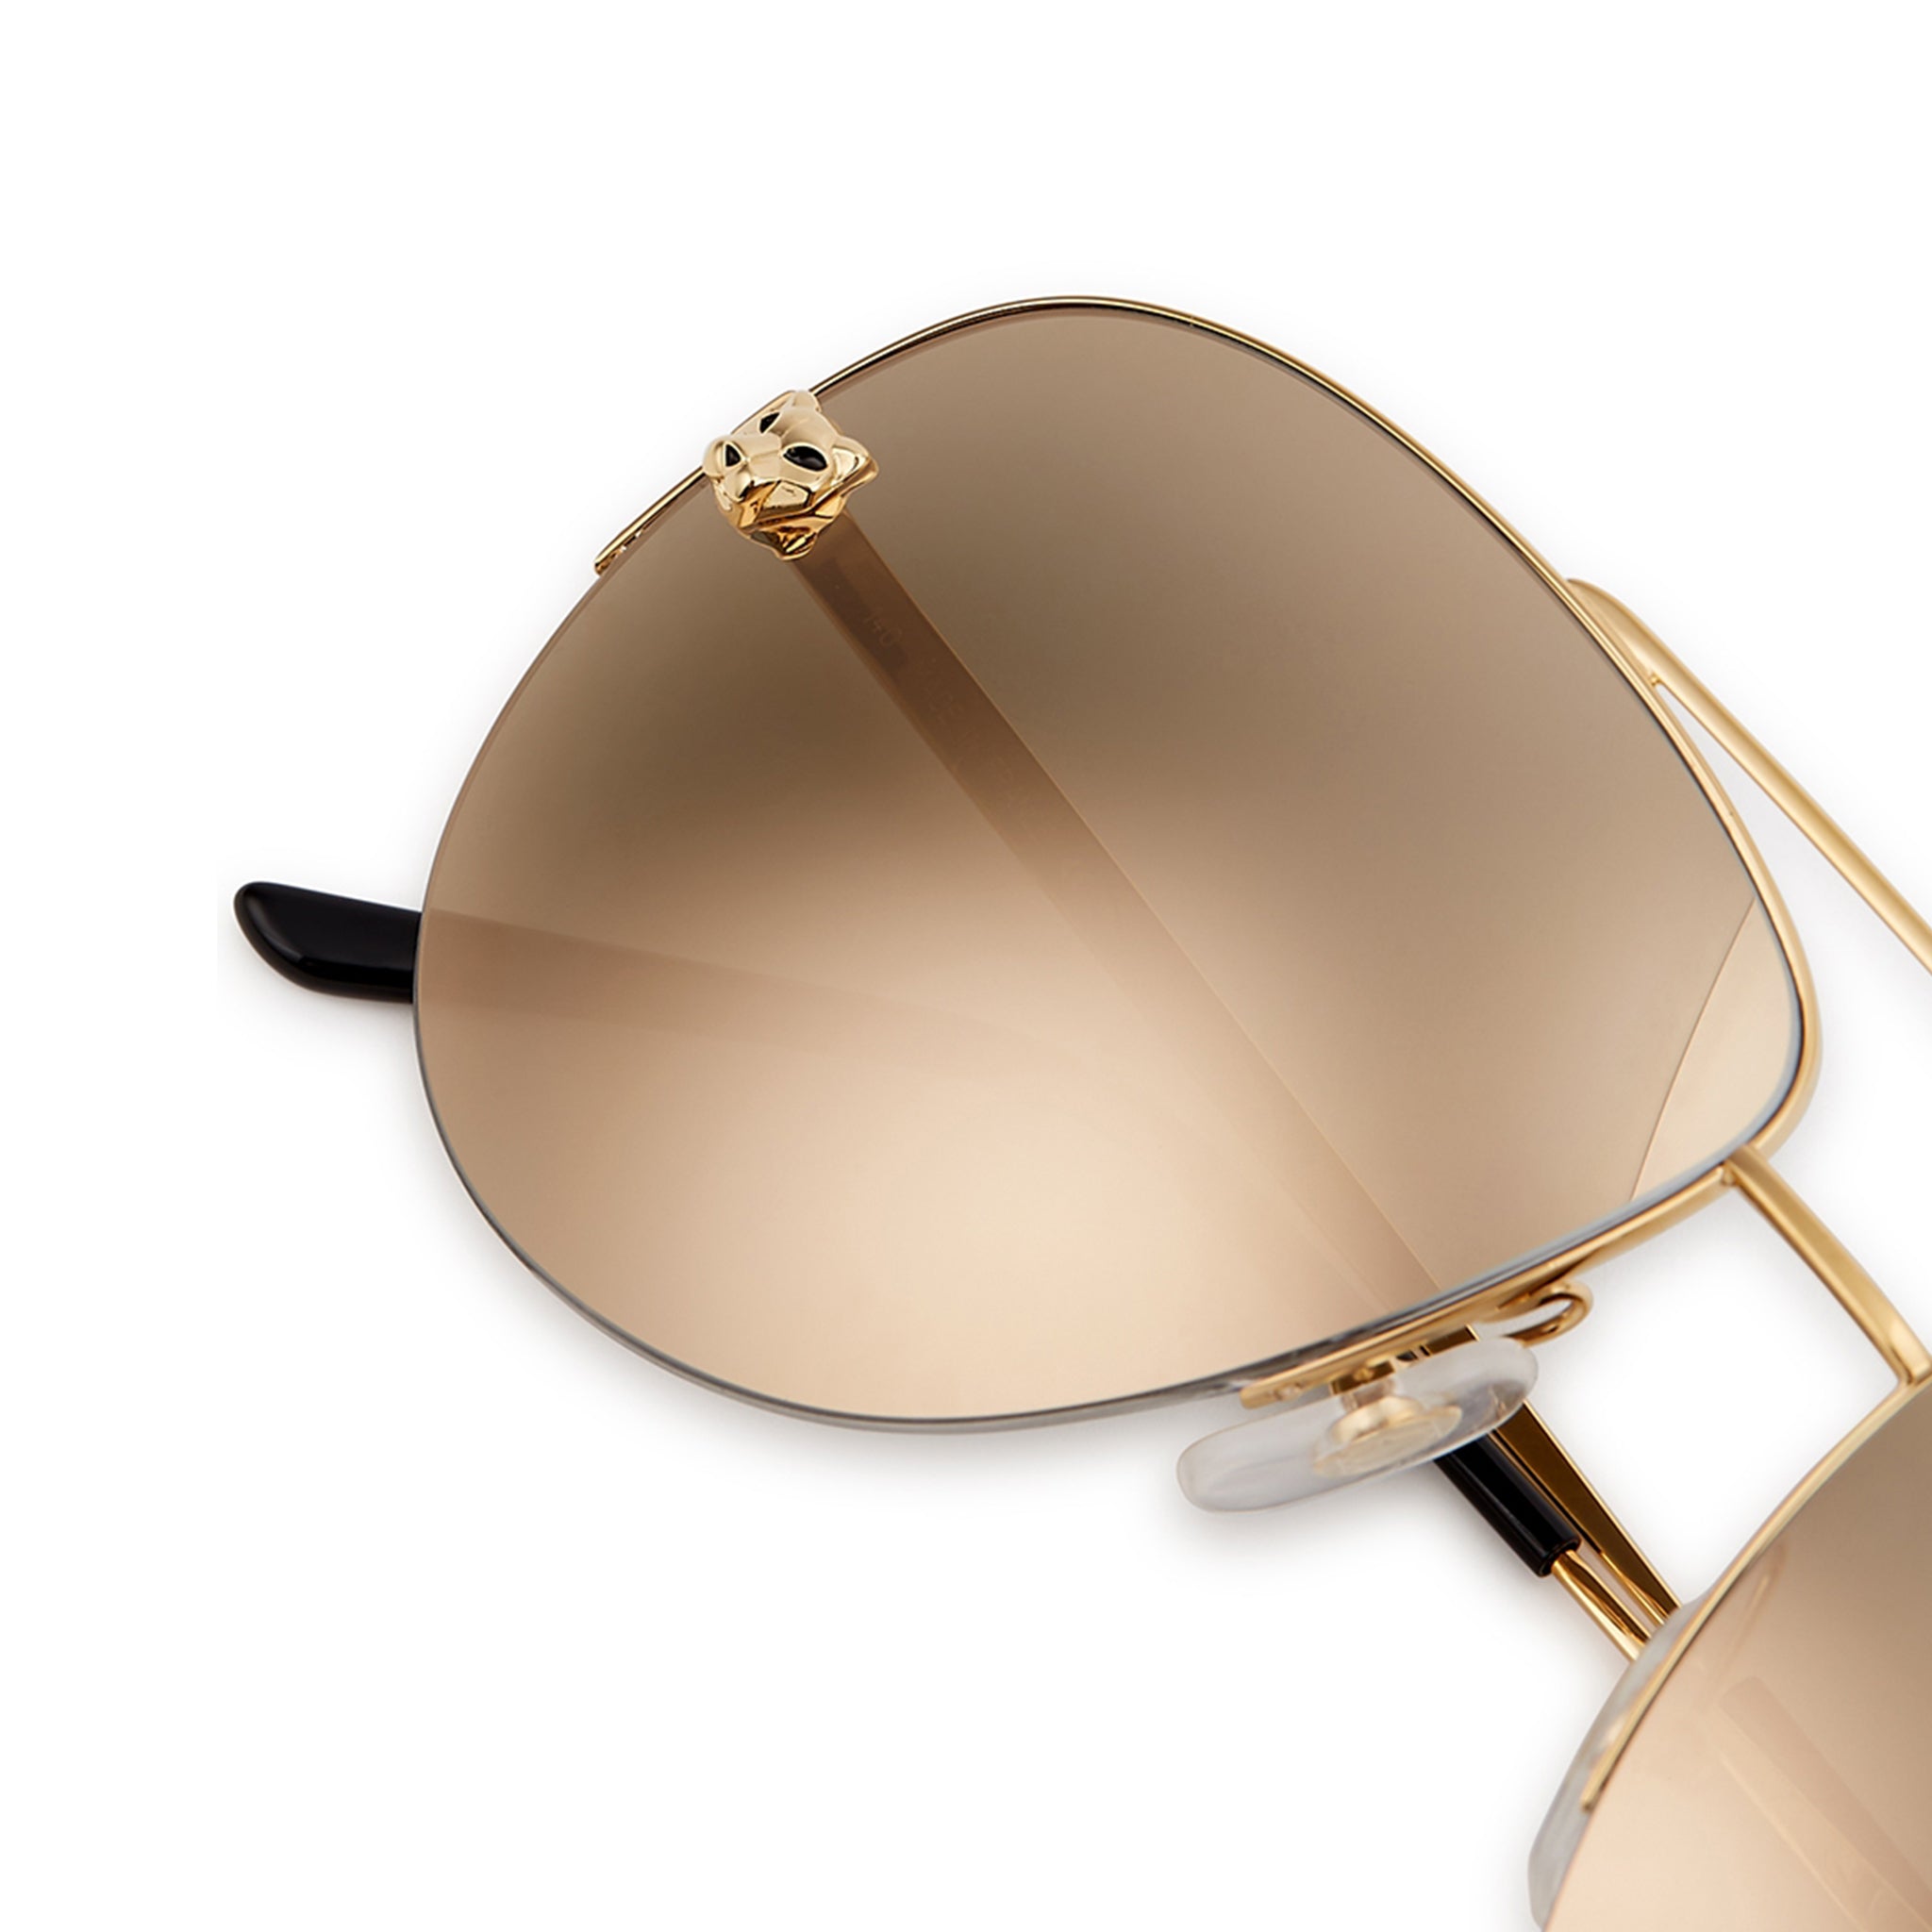 Image of Cartier Panthère De Cartier CT0065S Gold Sunglasses